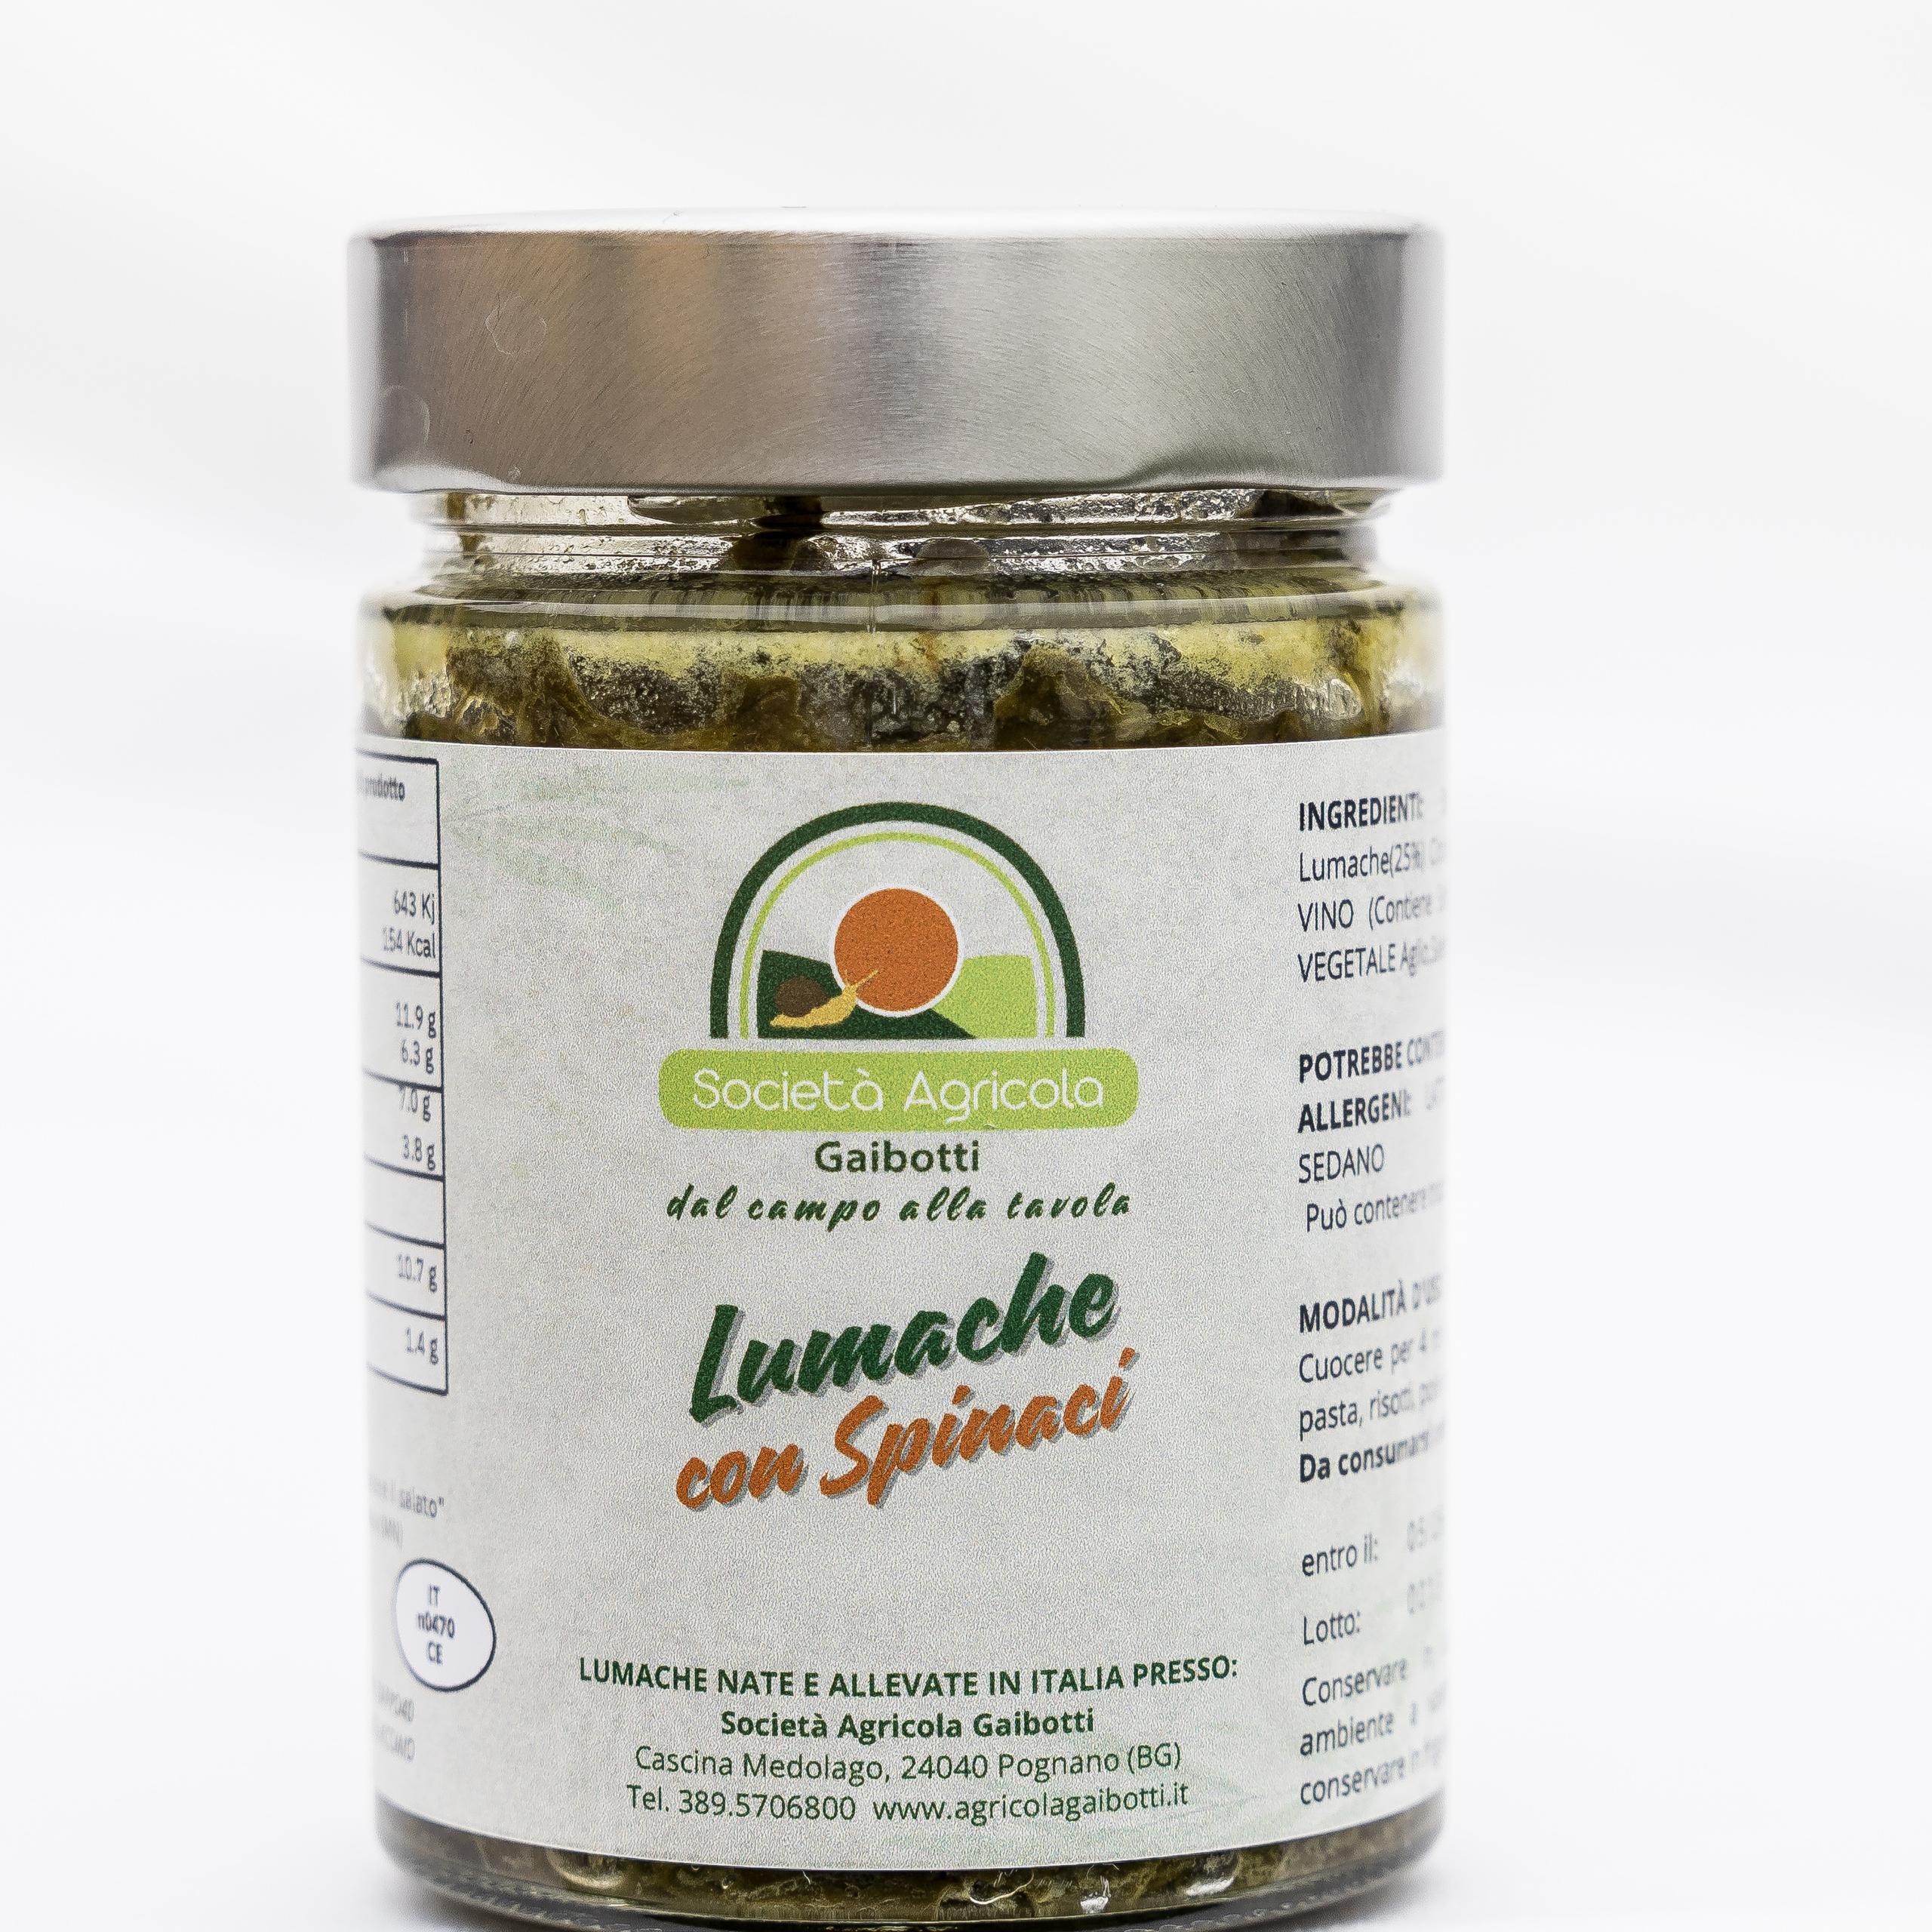 Lumache con spinaci - 300g